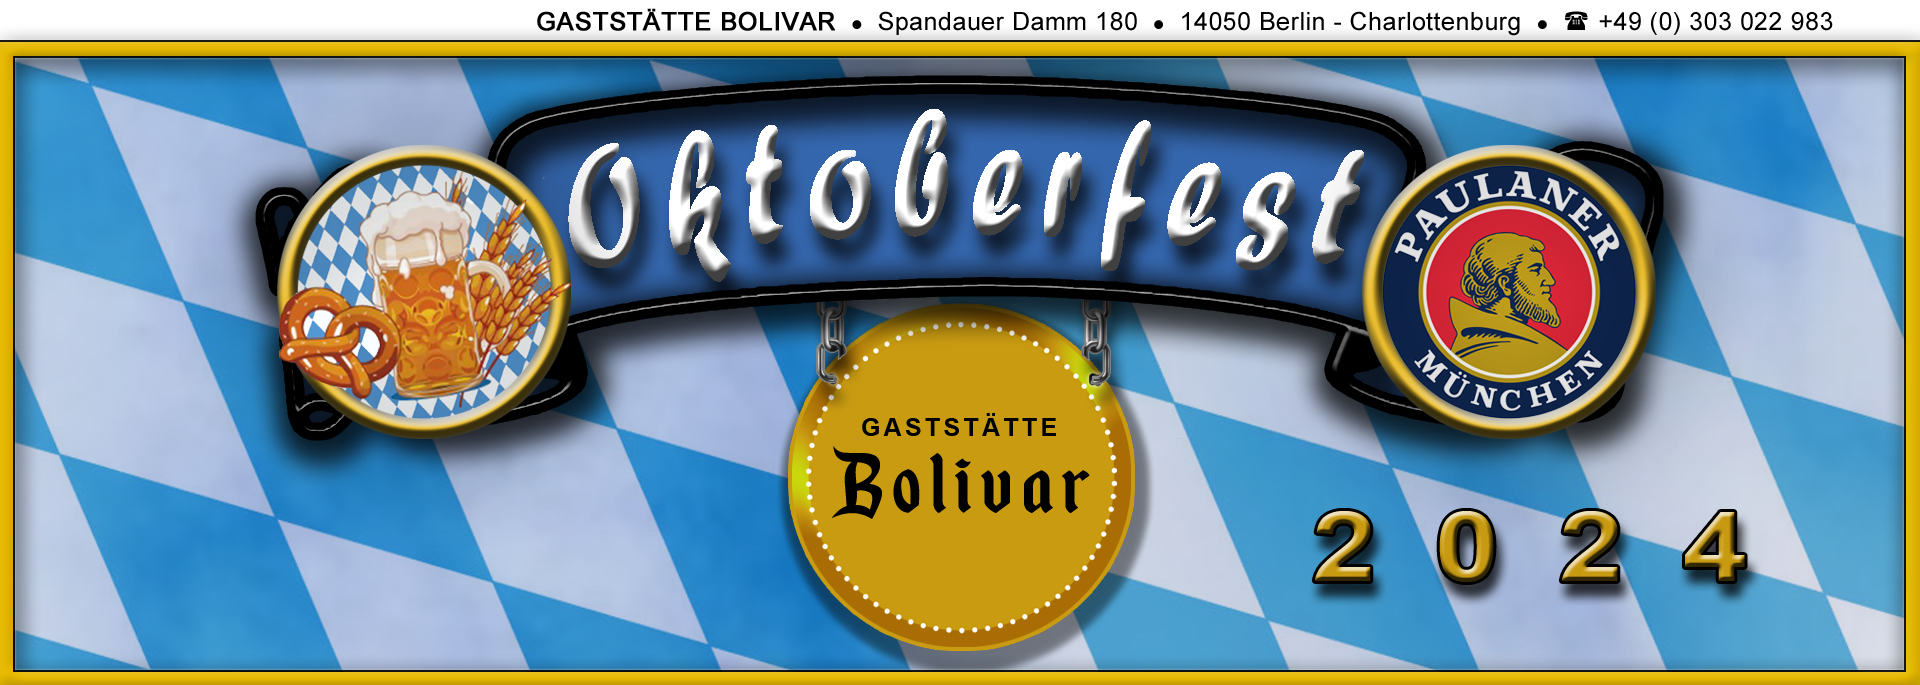 Oktoberfest 2024, am 14. September 2024 im Bolivar, in Berlin - Charlottenburg - Westend - mit Tanz